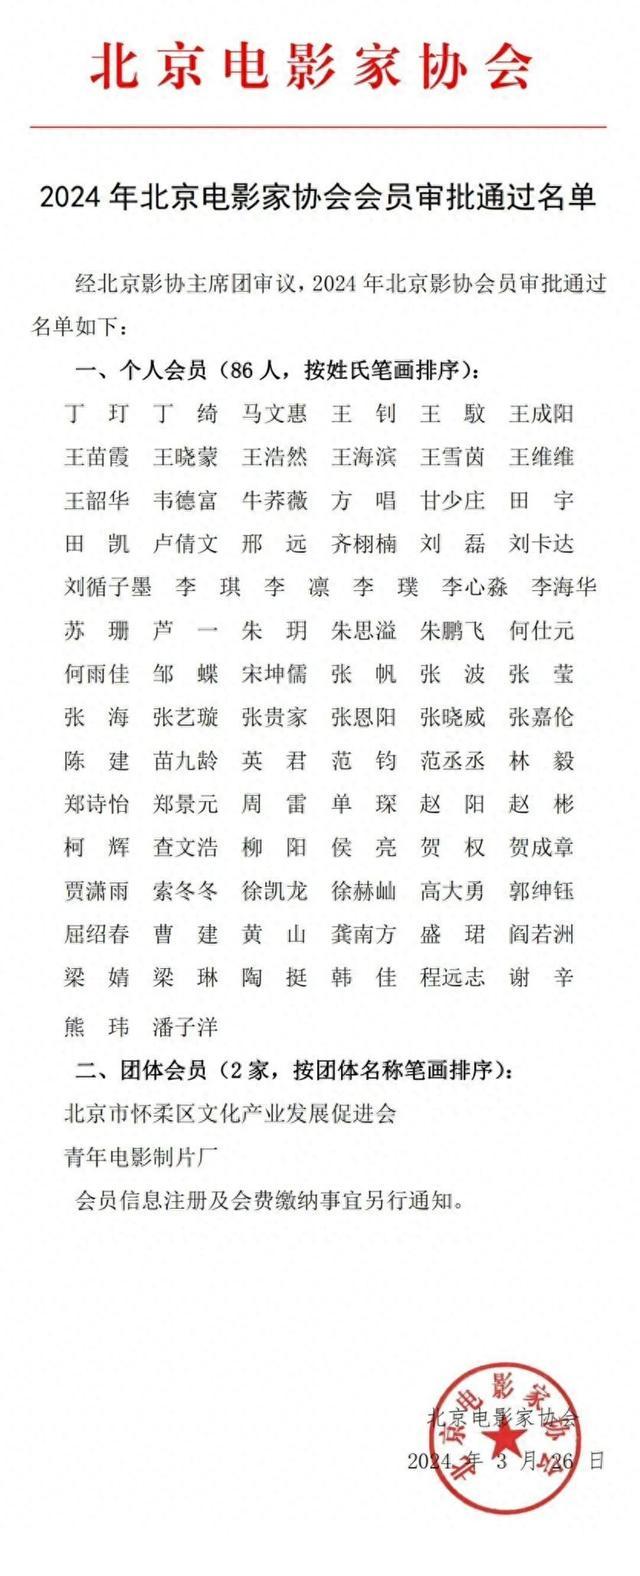 86人入选北京电影家协会，名单公布